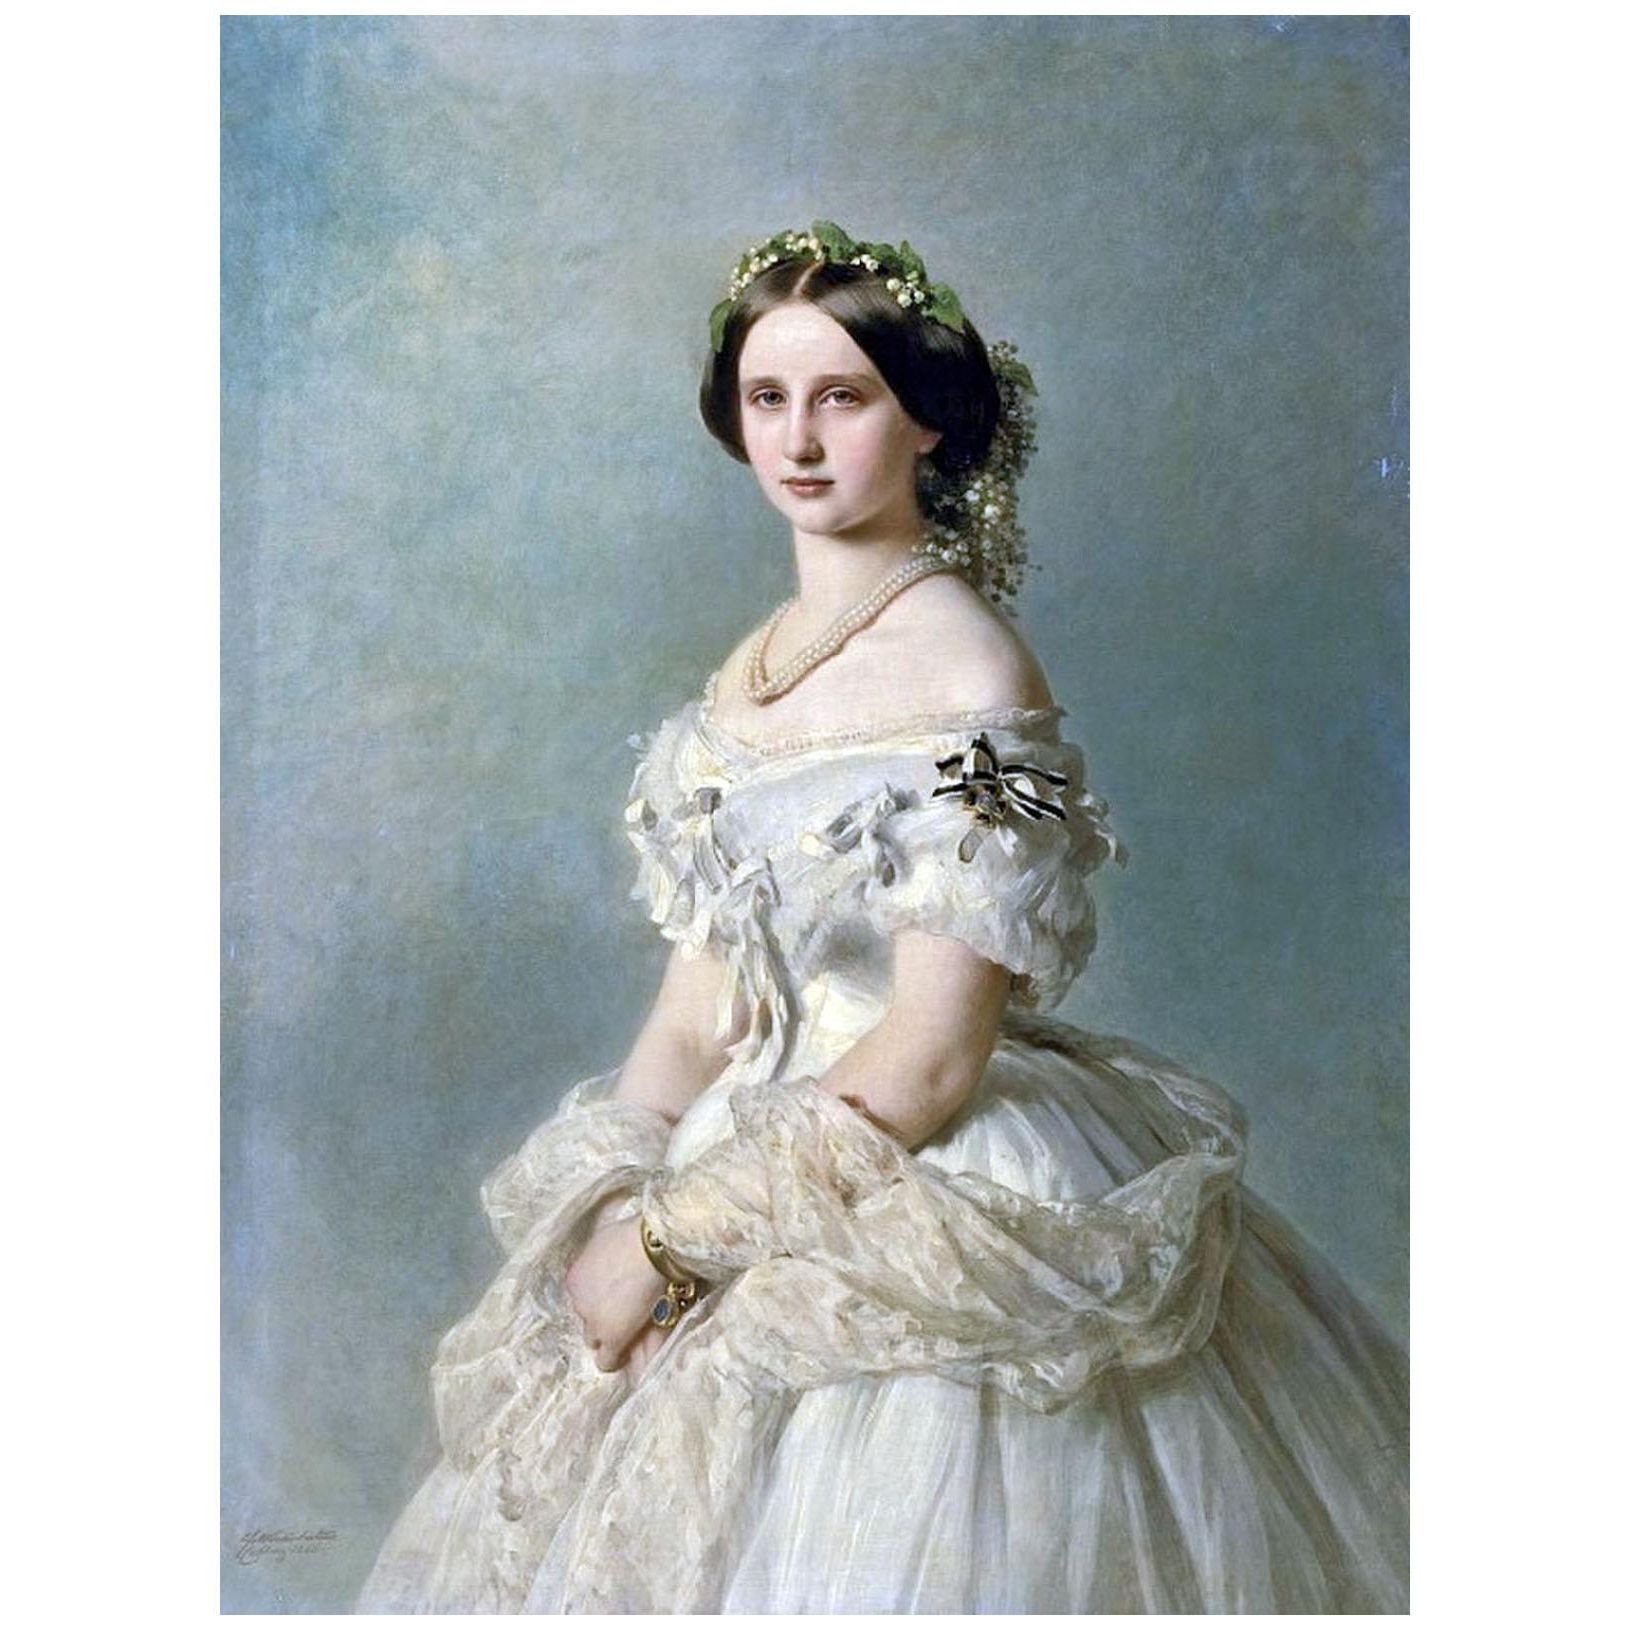 Franz Winterhalter. Luise von Baden, Prinzessen von Preussen. 1856. Pushkin Museum